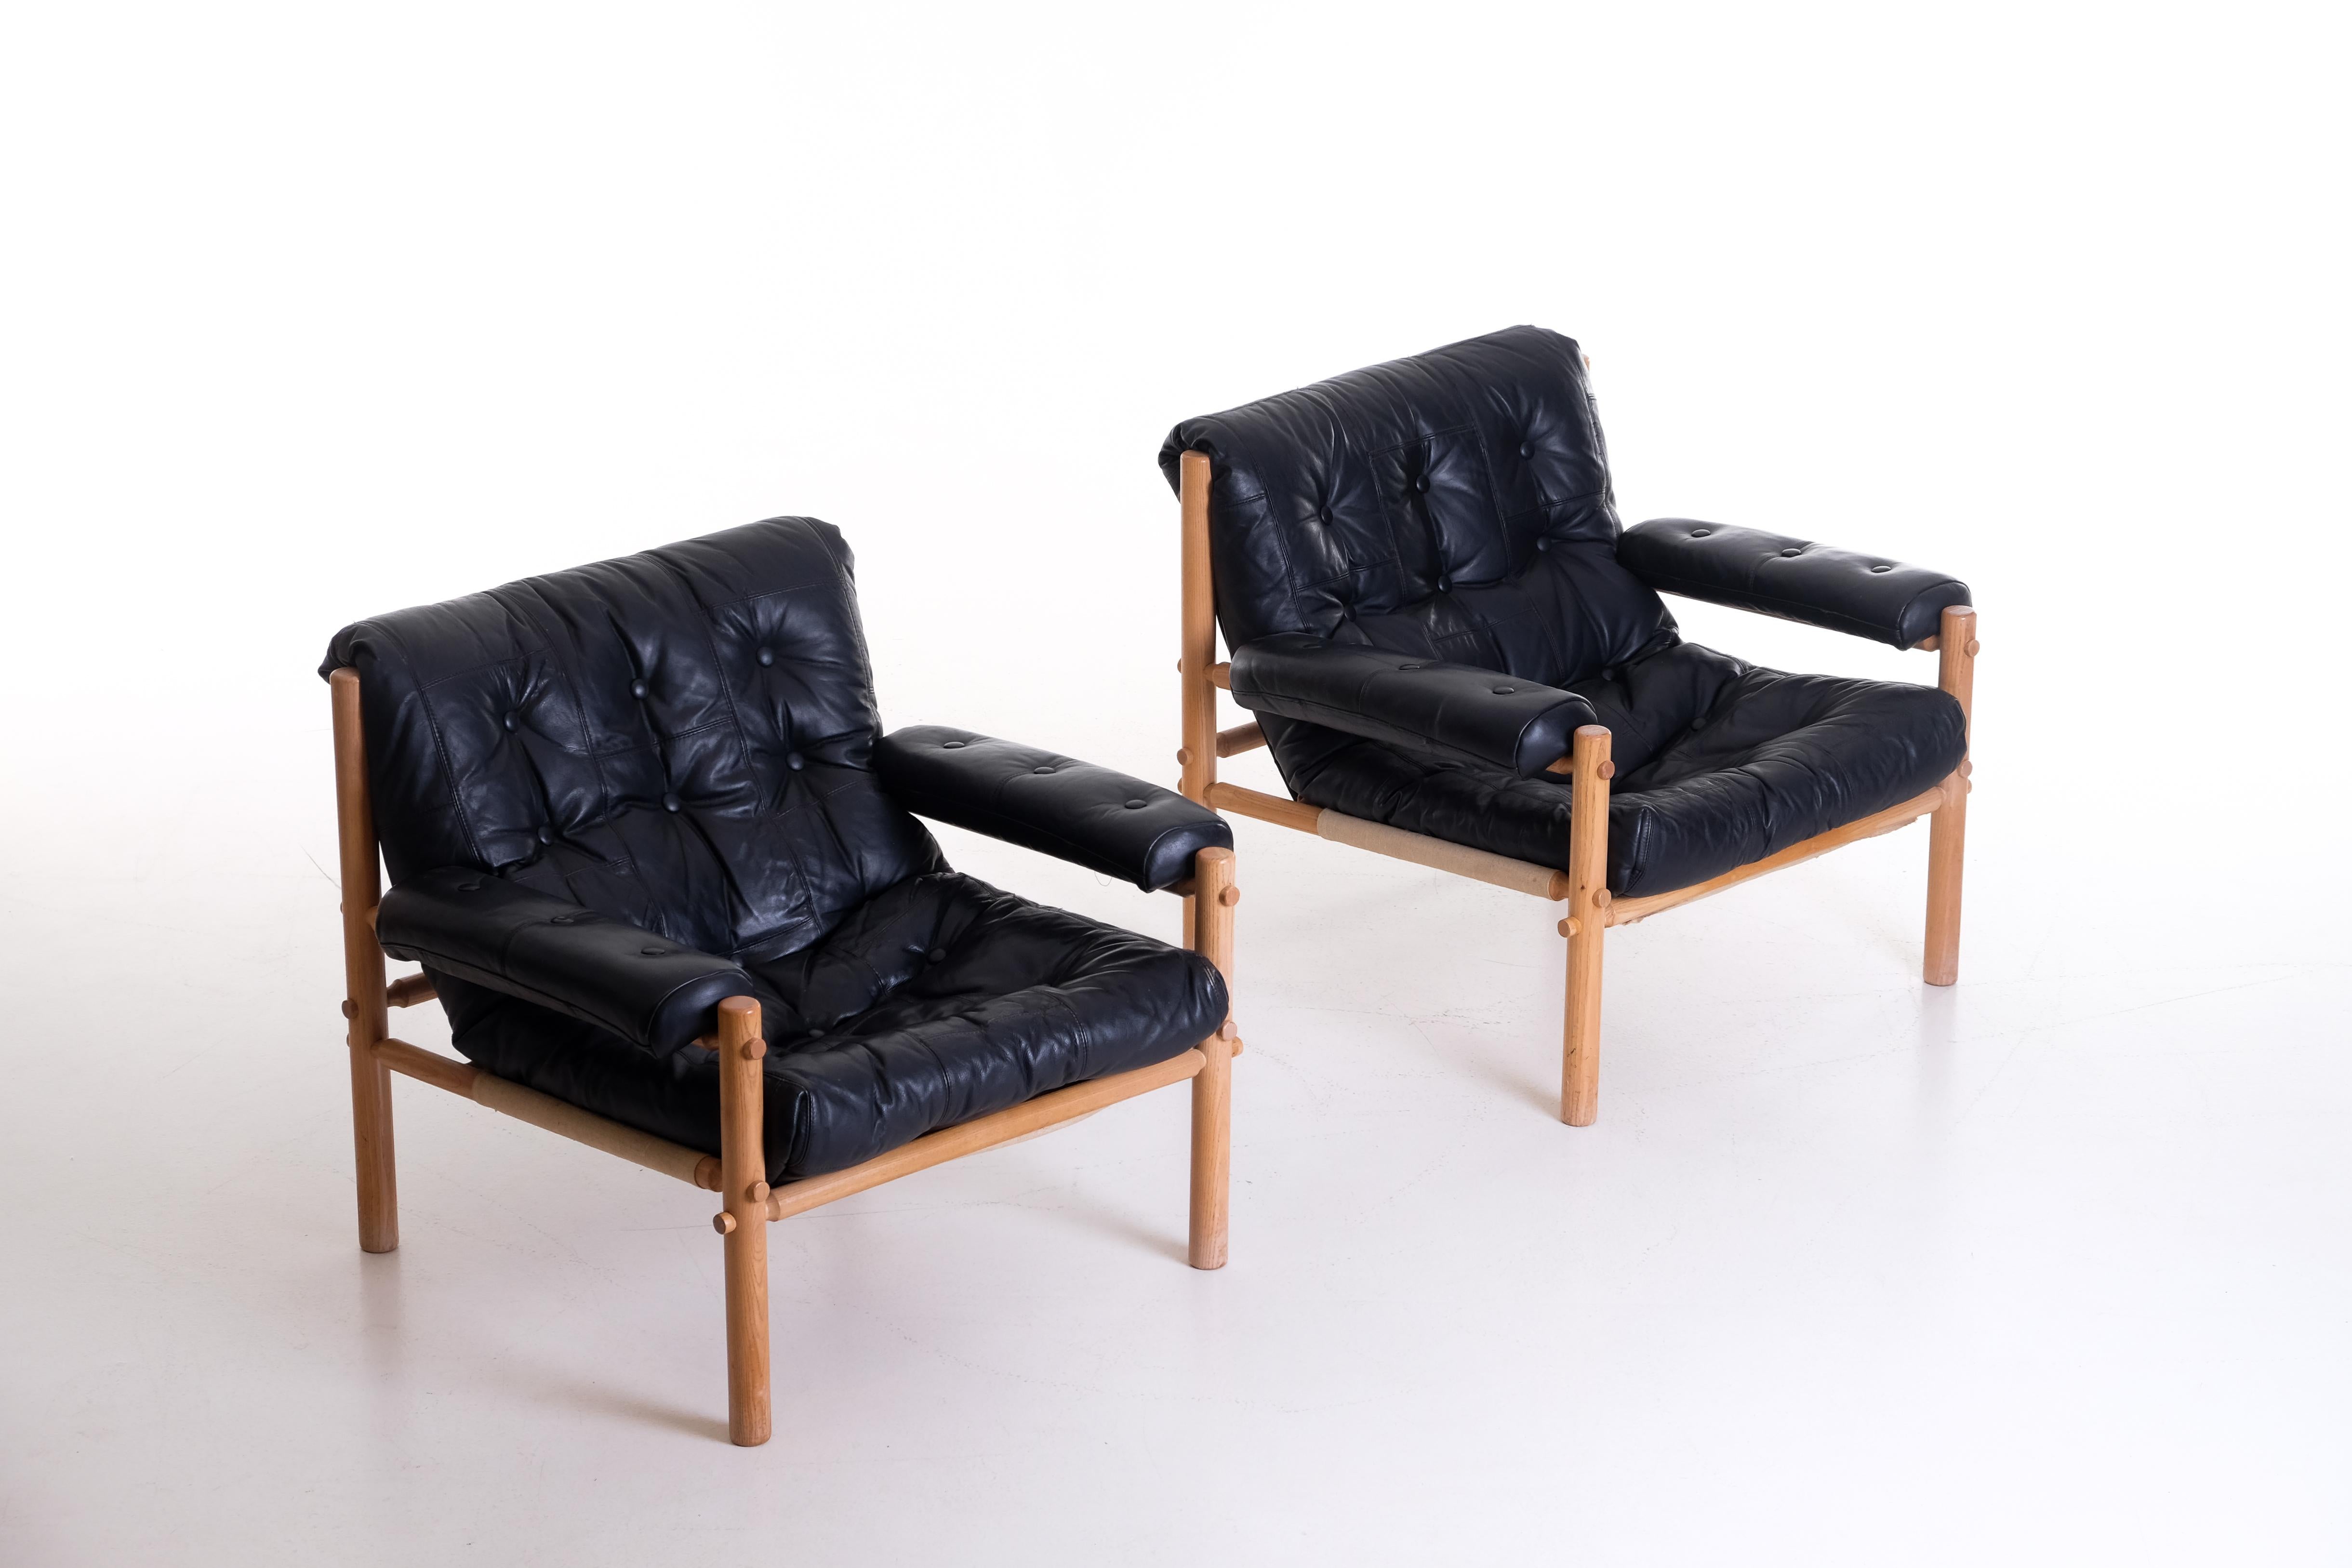 Paar schwedische Safaristühle / Sessel mit original schwarzem Leder in gutem Zustand.
  




